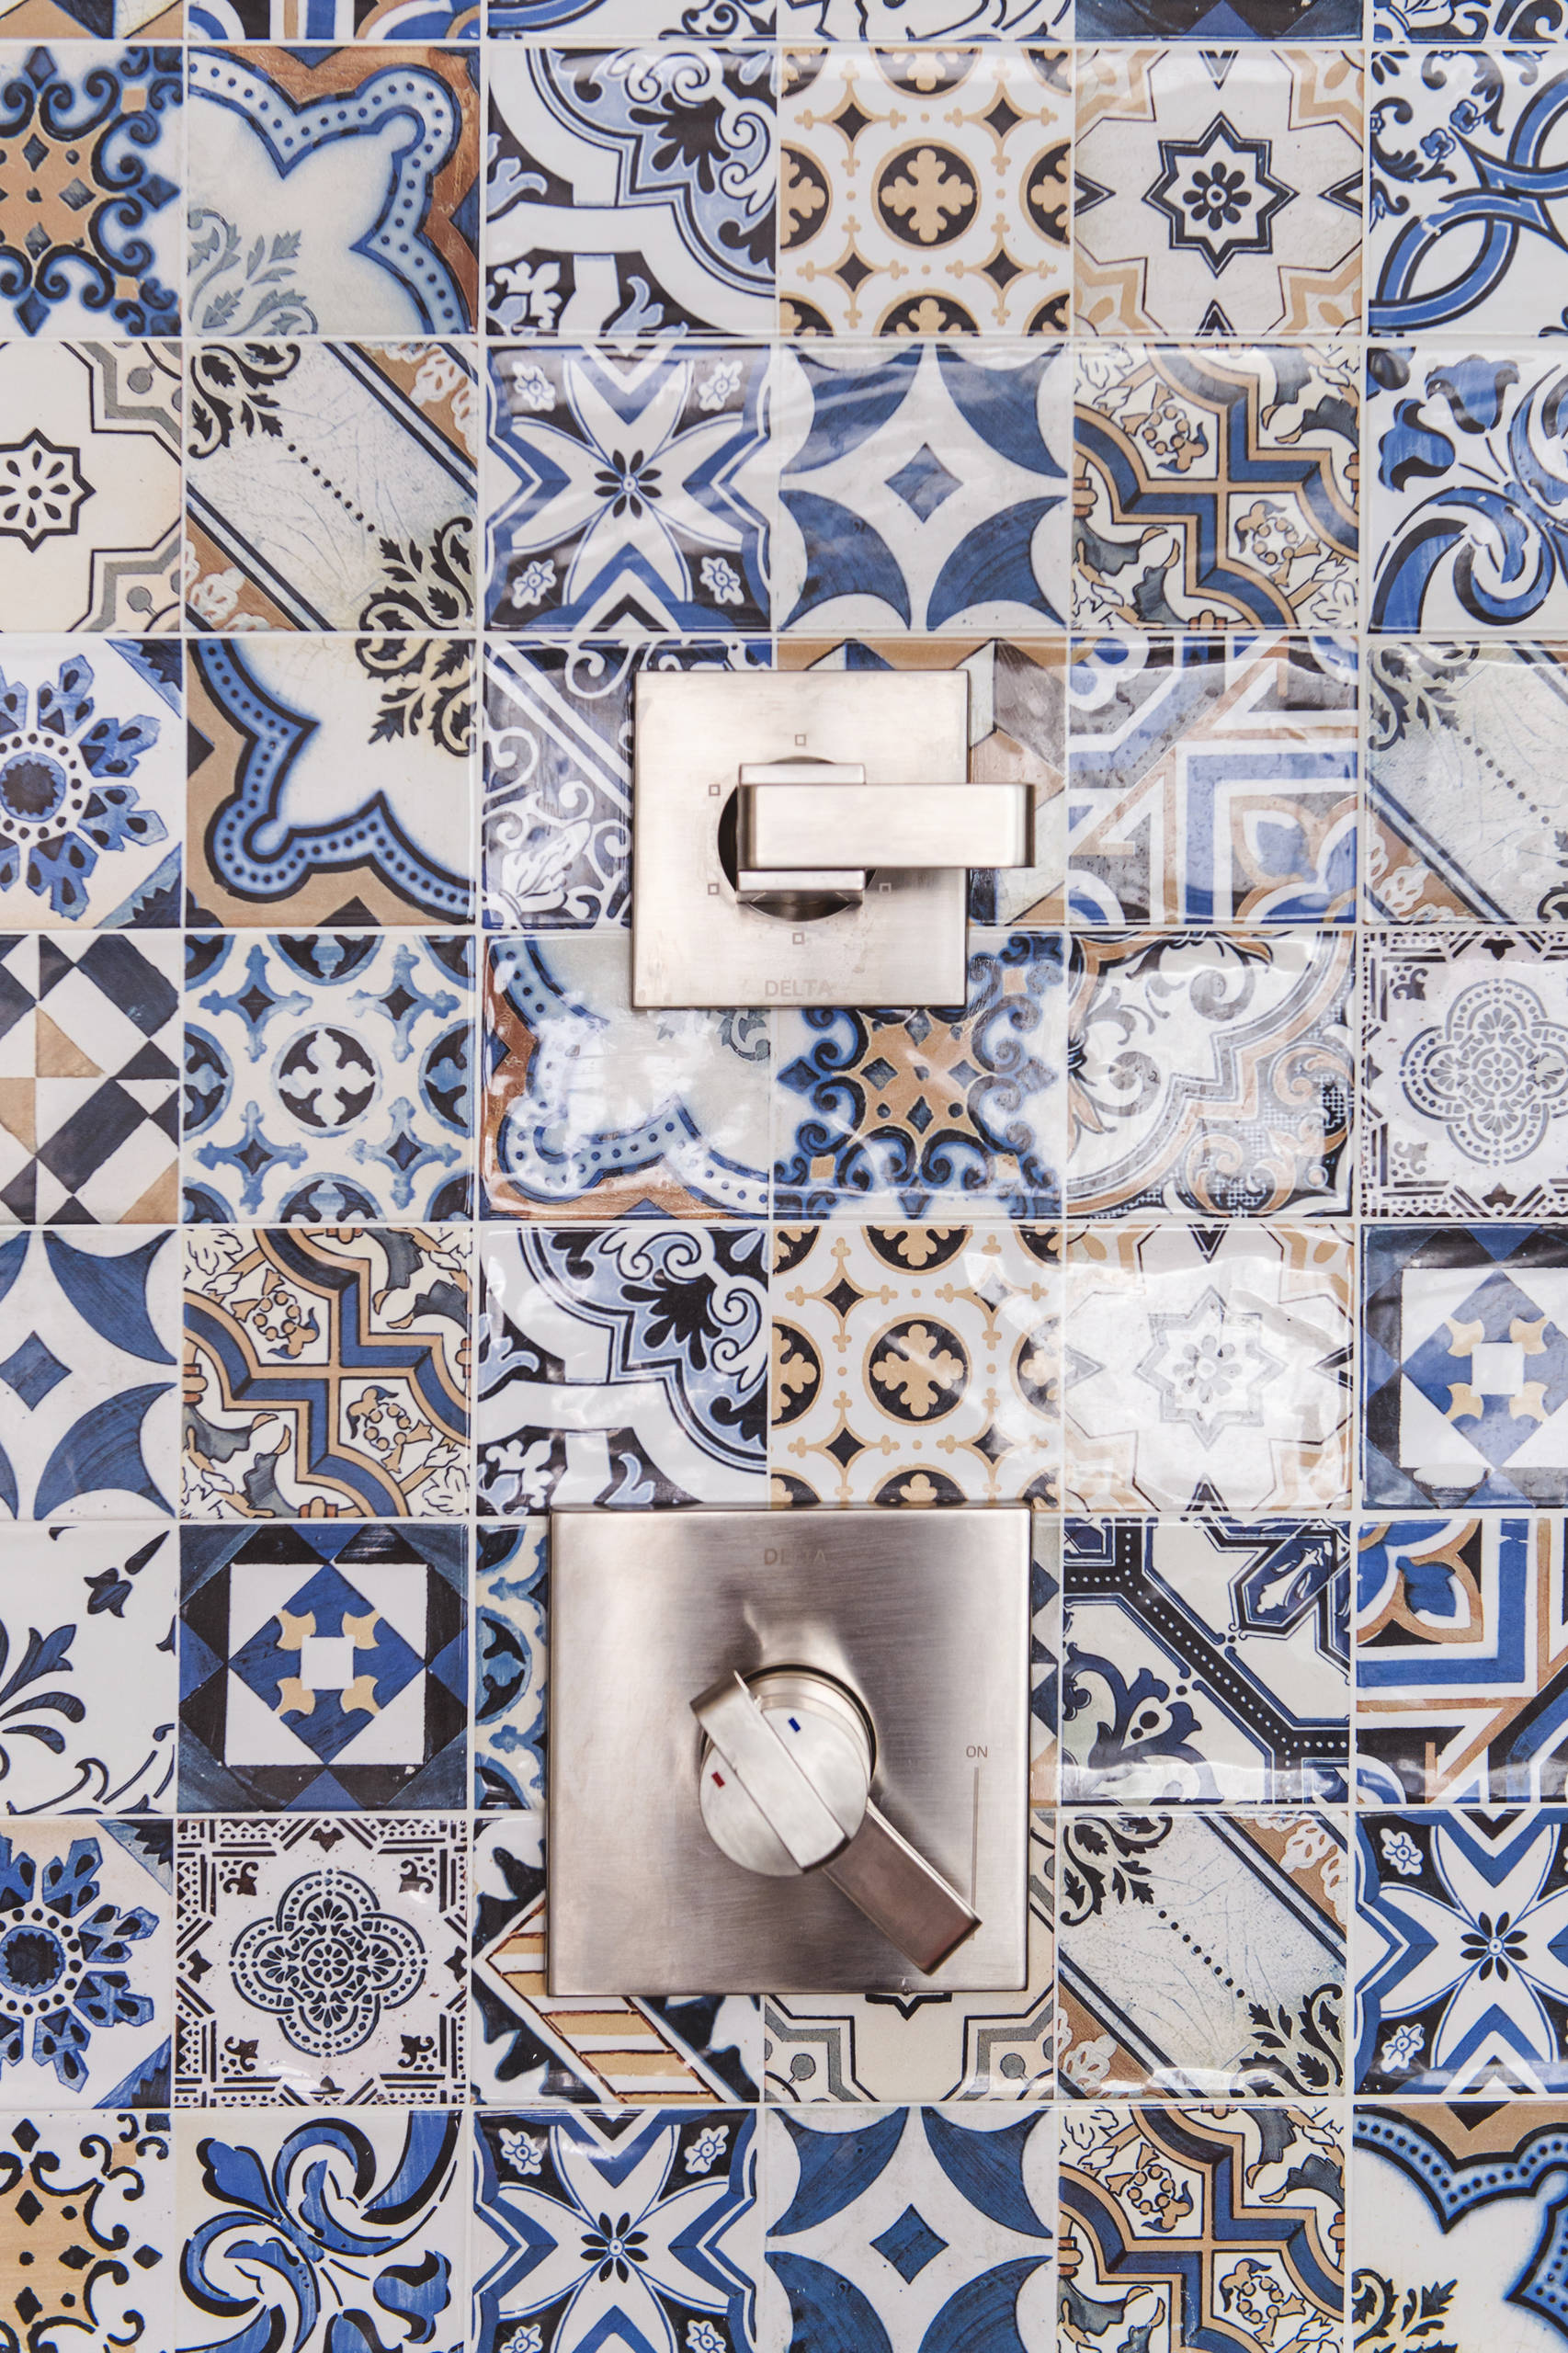 Spanish Tile Designs Houzz, Modern Spanish Tile